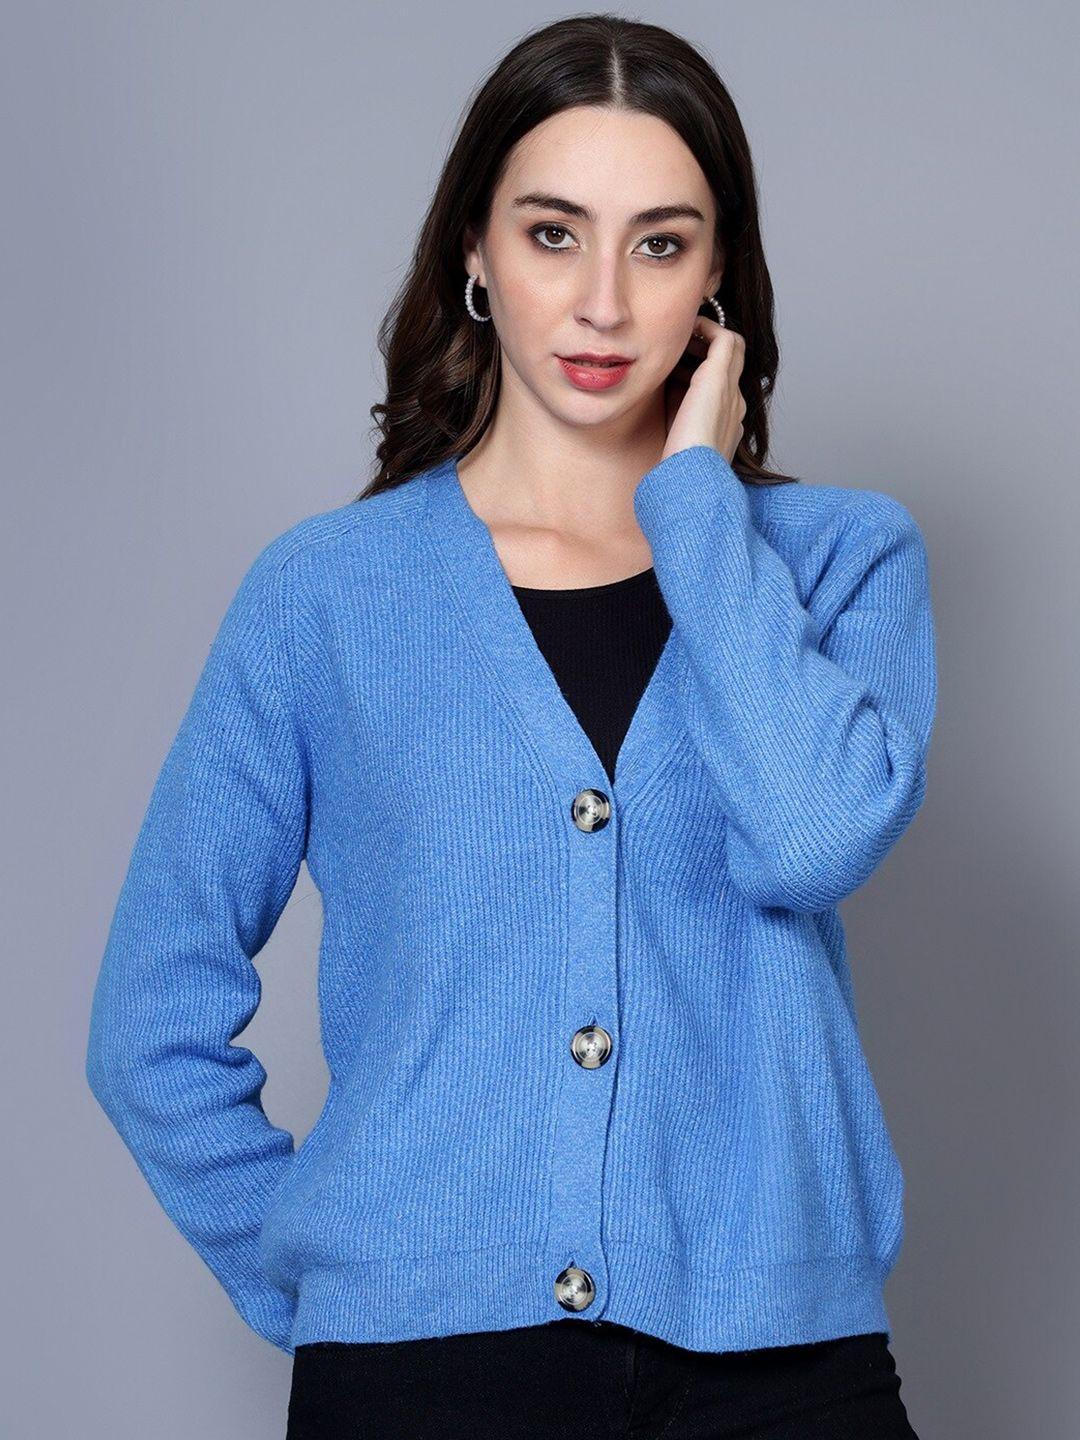 broowl v-neck woollen sweater vest